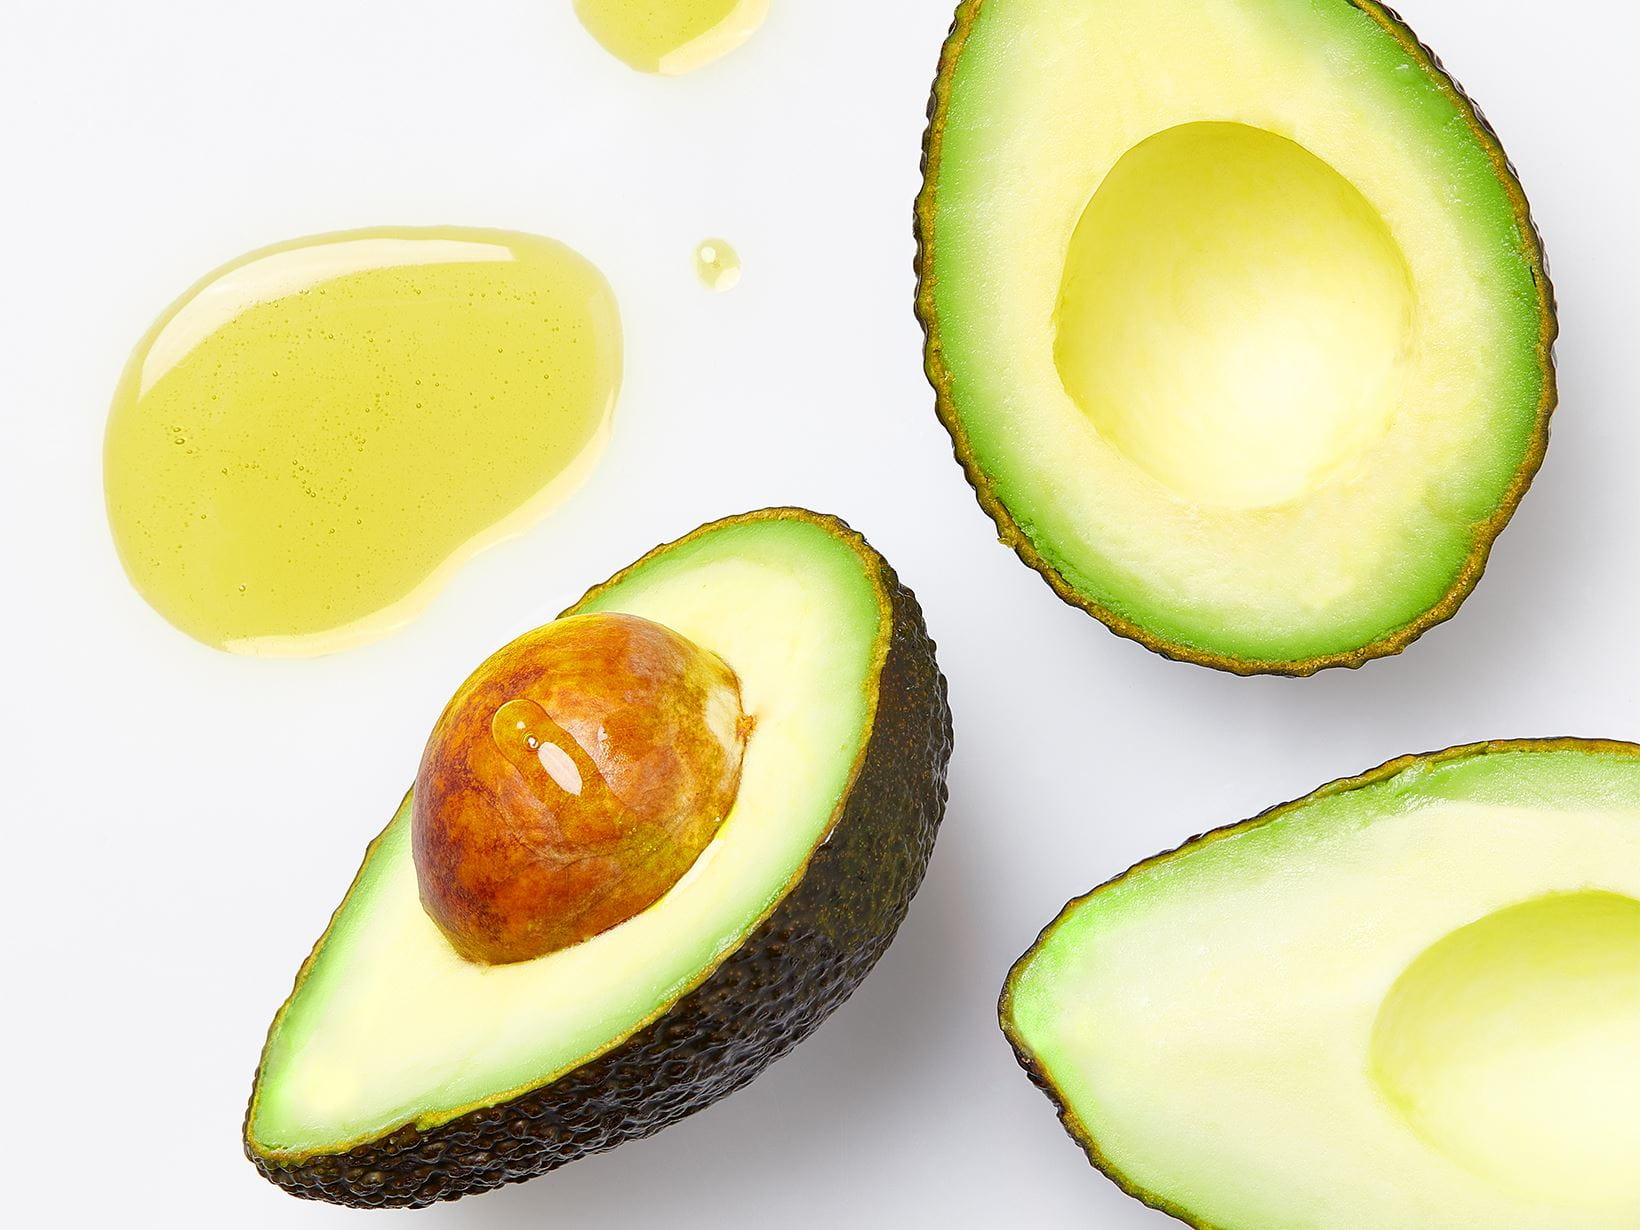 Avocado-Öl hat einen hohen Vitamin-E-Gehalt. Das macht die Lippen langanhaltend geschmeidig.